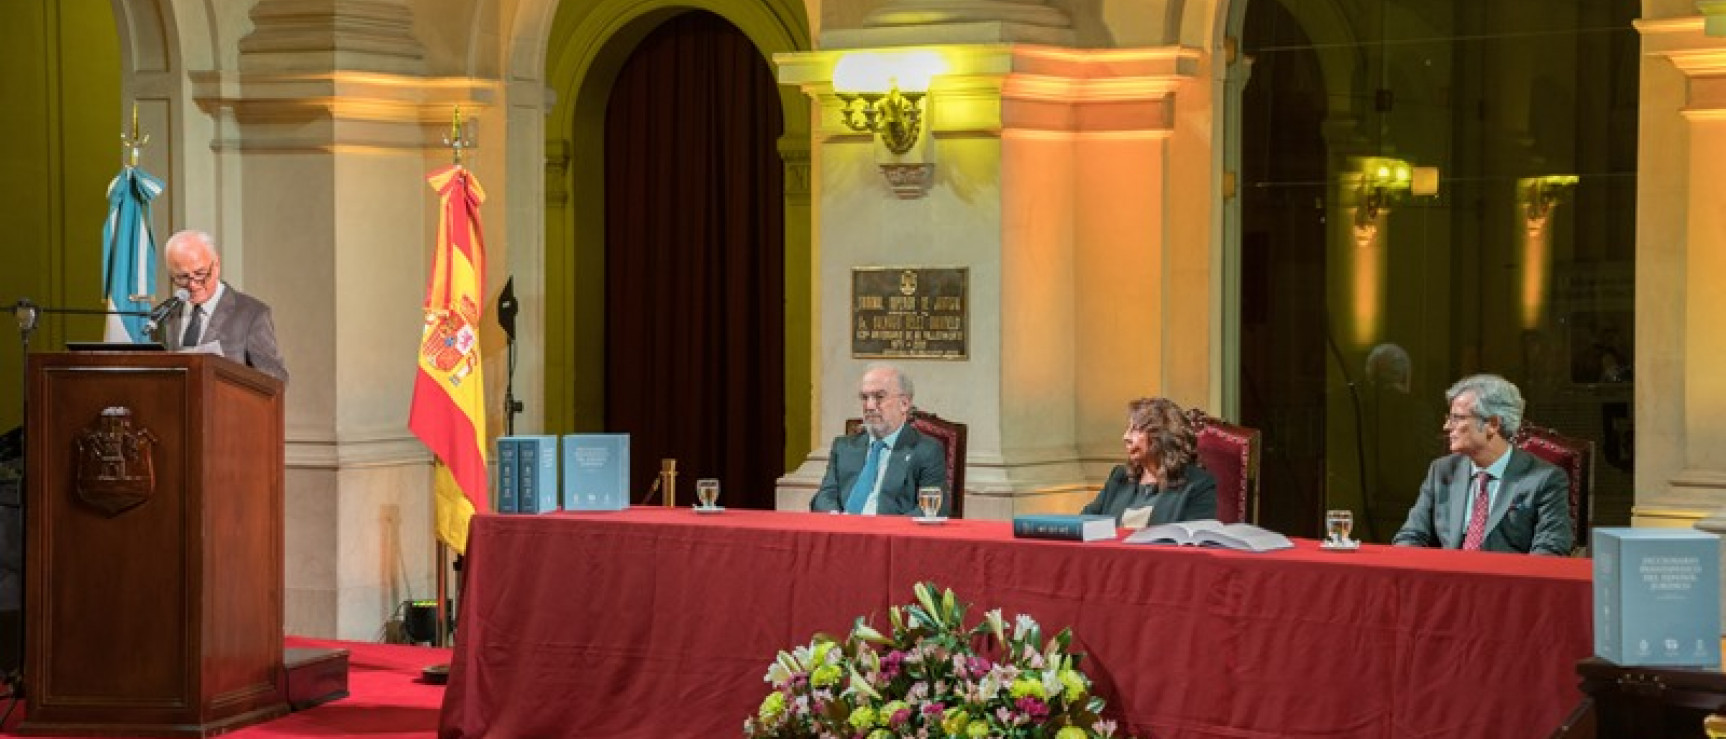 La sesión se ha celebrado en el Palacio de Justicia de Córdoba.